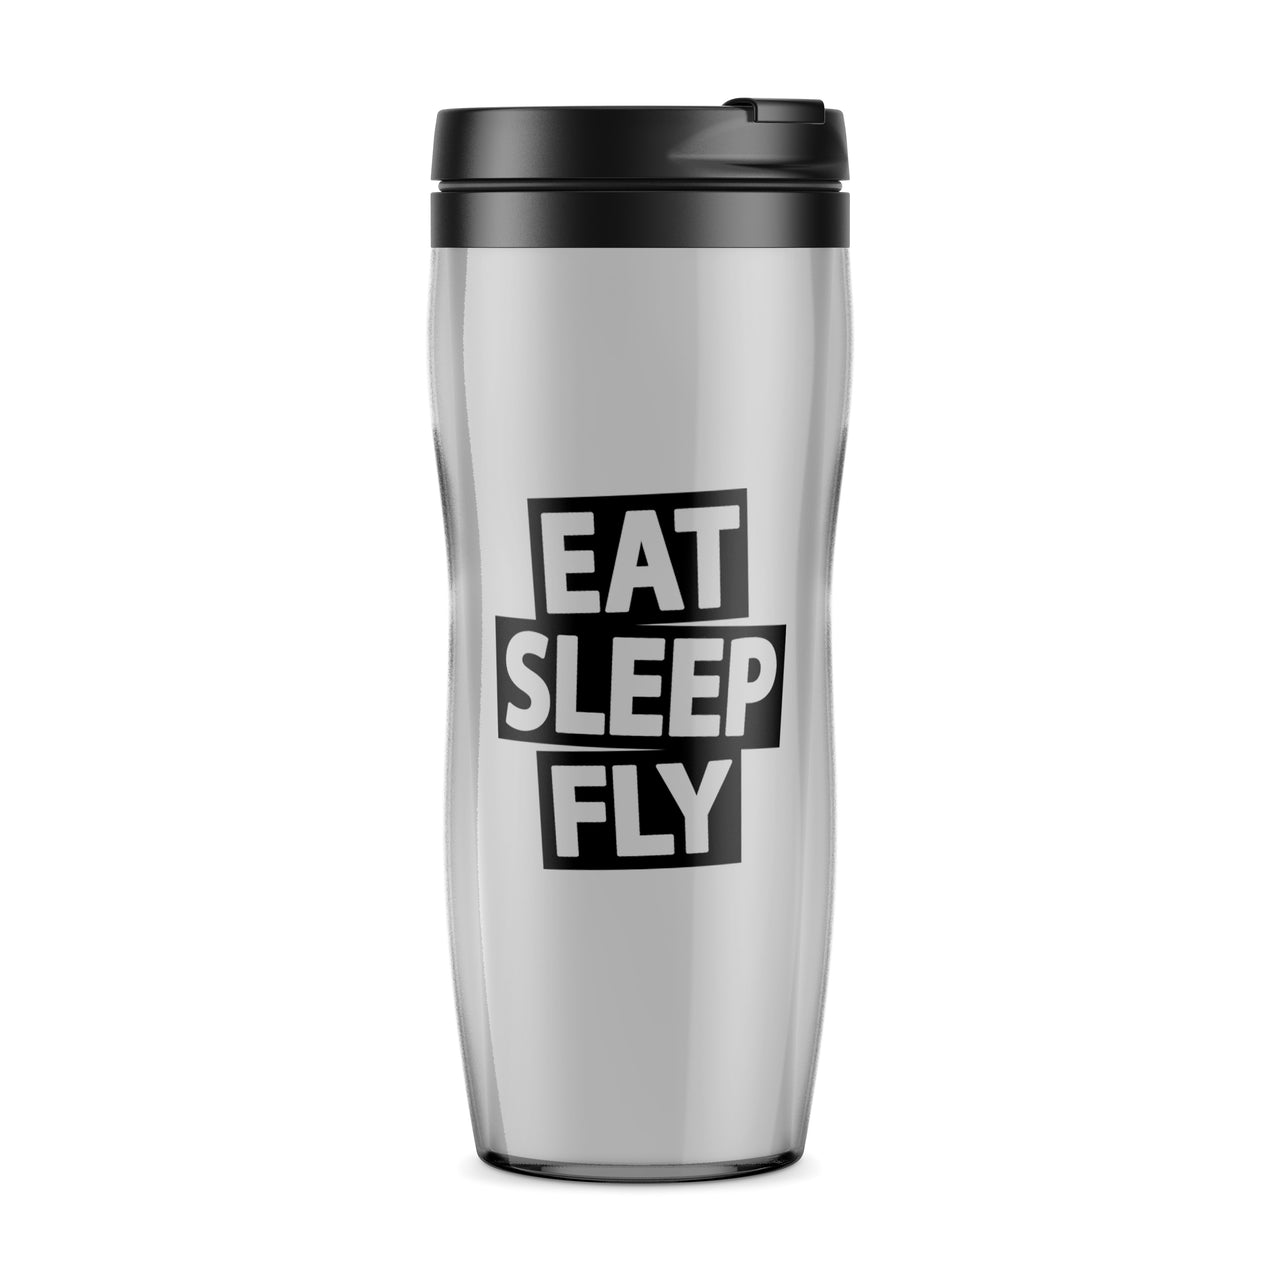 Eat Sleep Fly Designed Travel Mugs